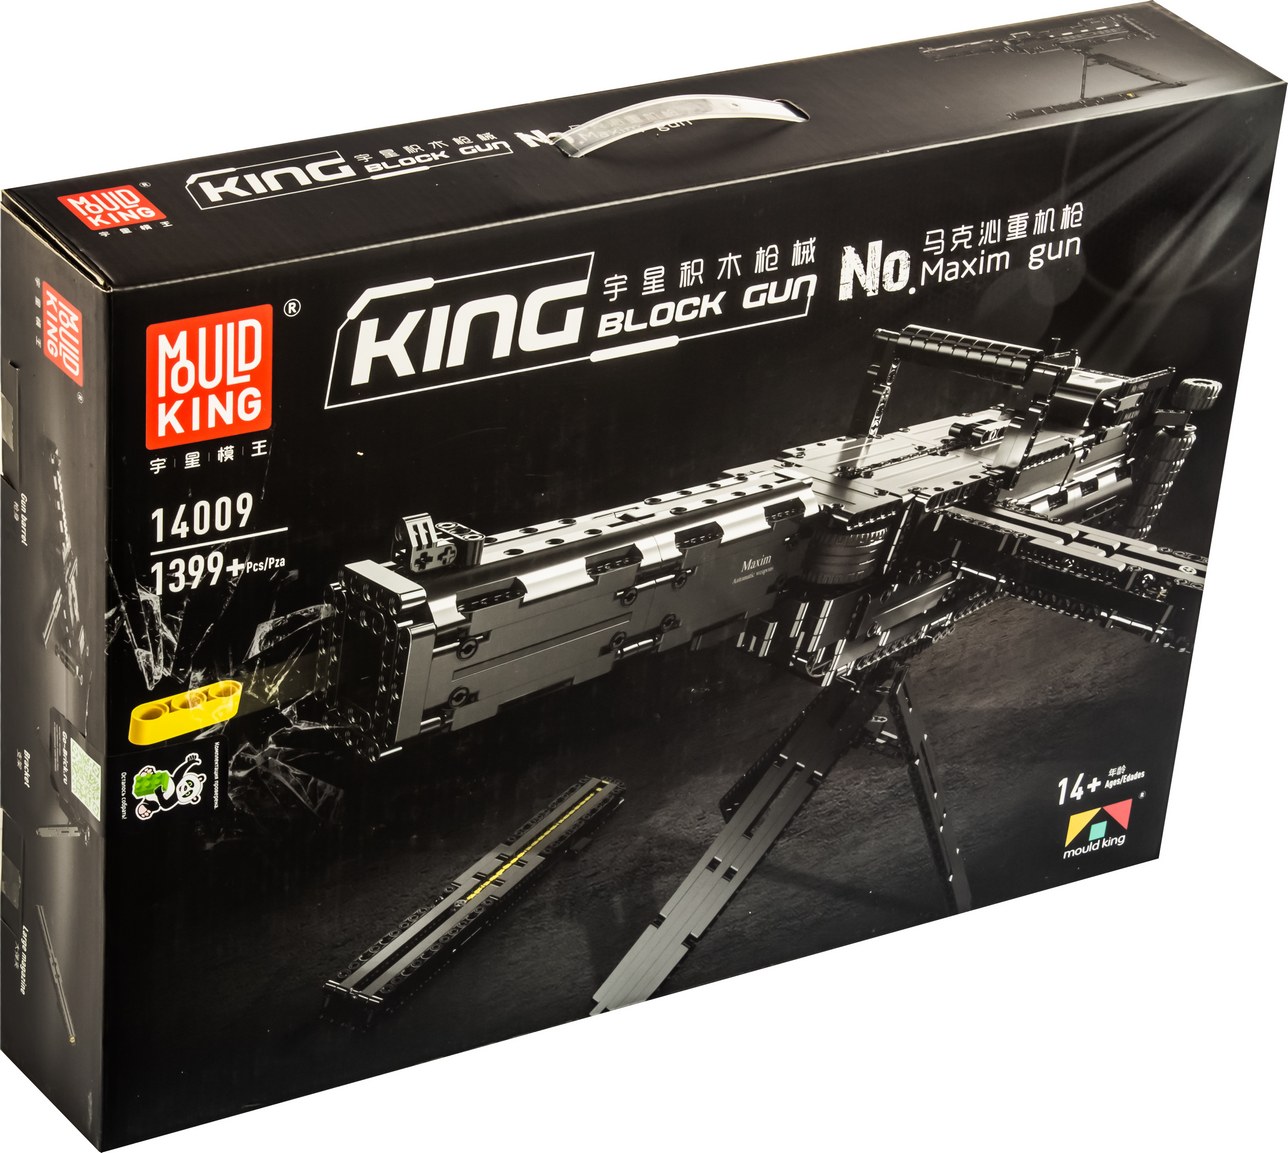 фото Конструктор mould king 14009 пулемет максима, 14+, 1 399 дет.